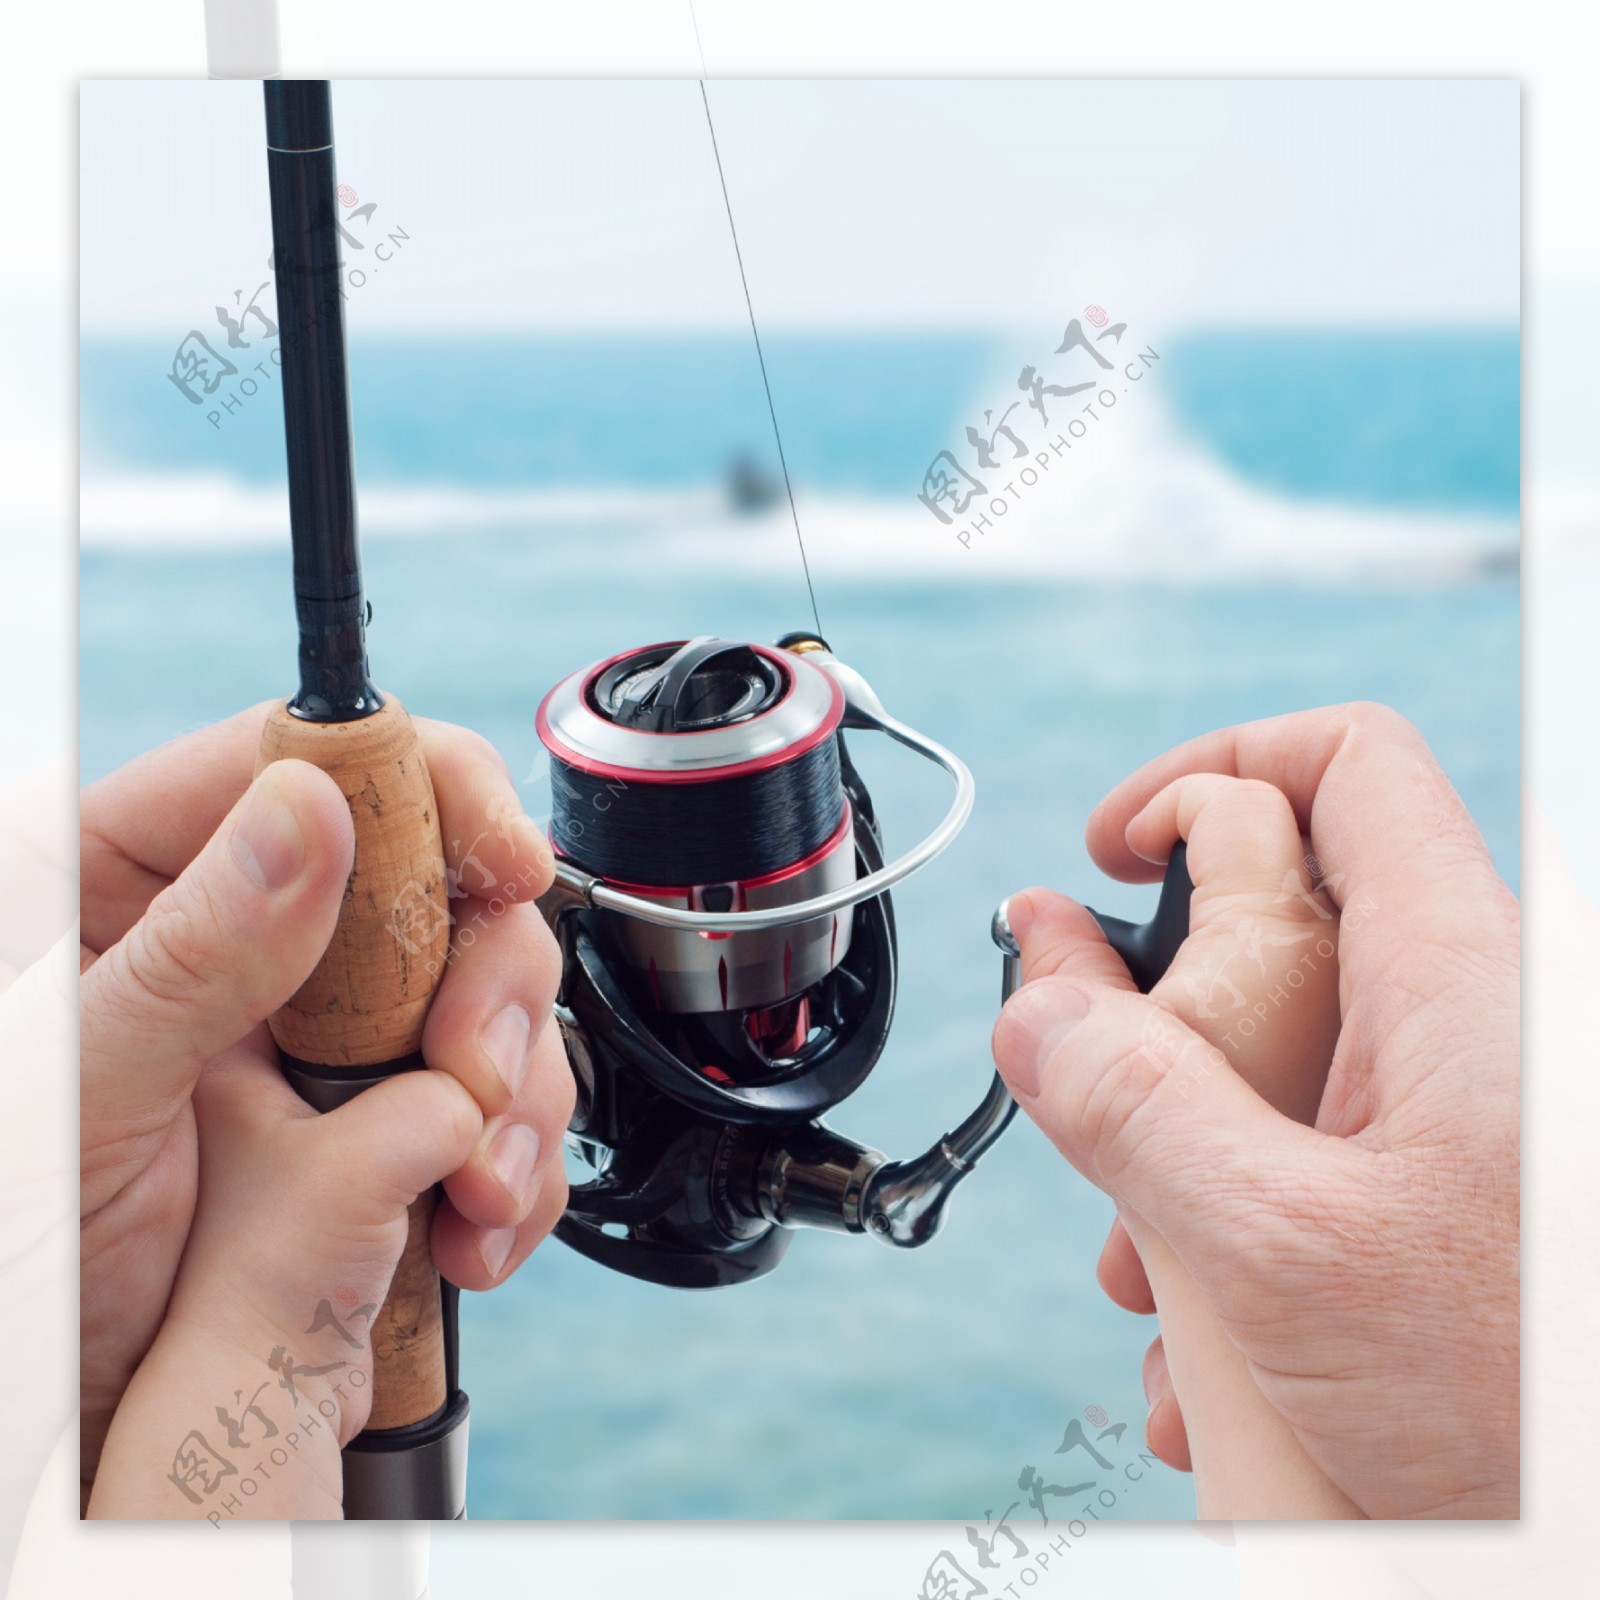 钓鱼鱼竿上的父子手图片